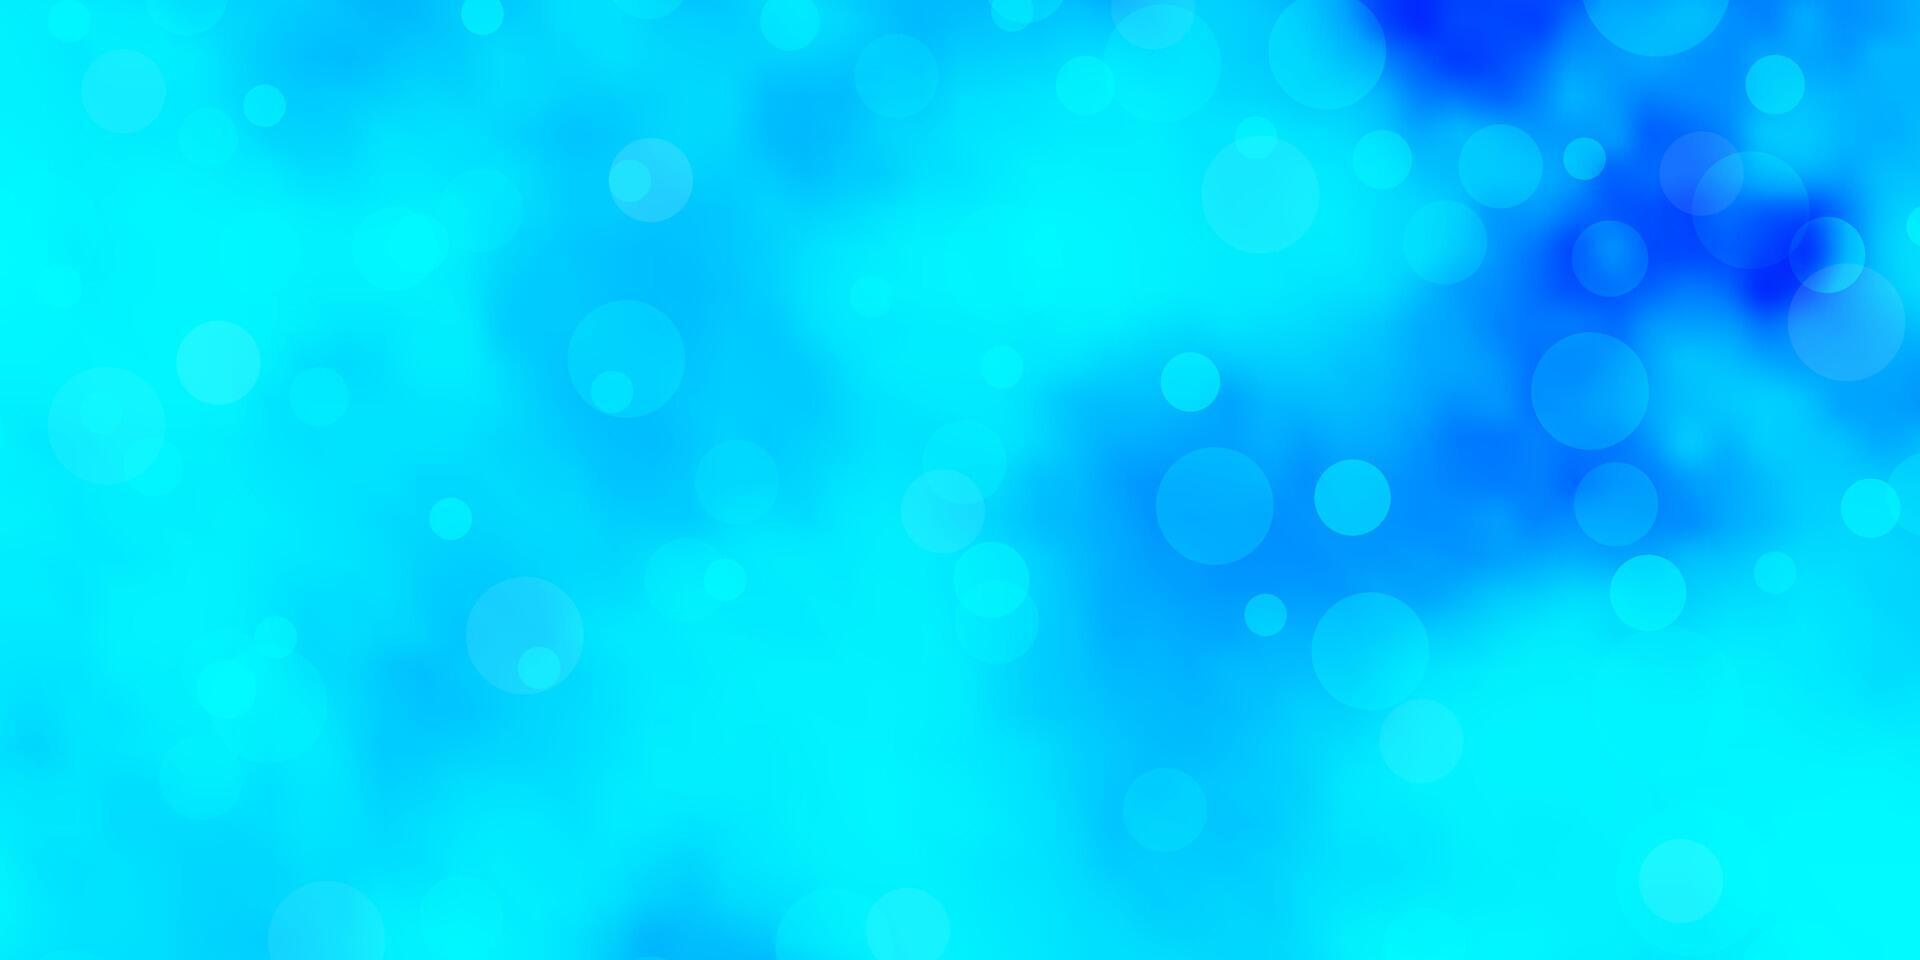 textura de vector azul claro con círculos.